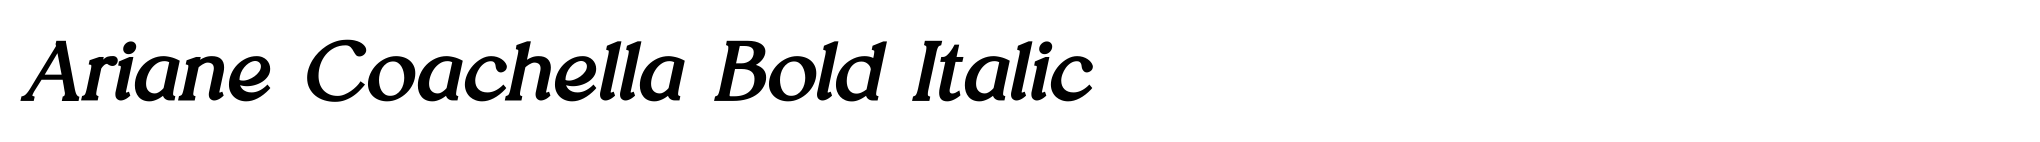 Ariane Coachella Bold Italic image